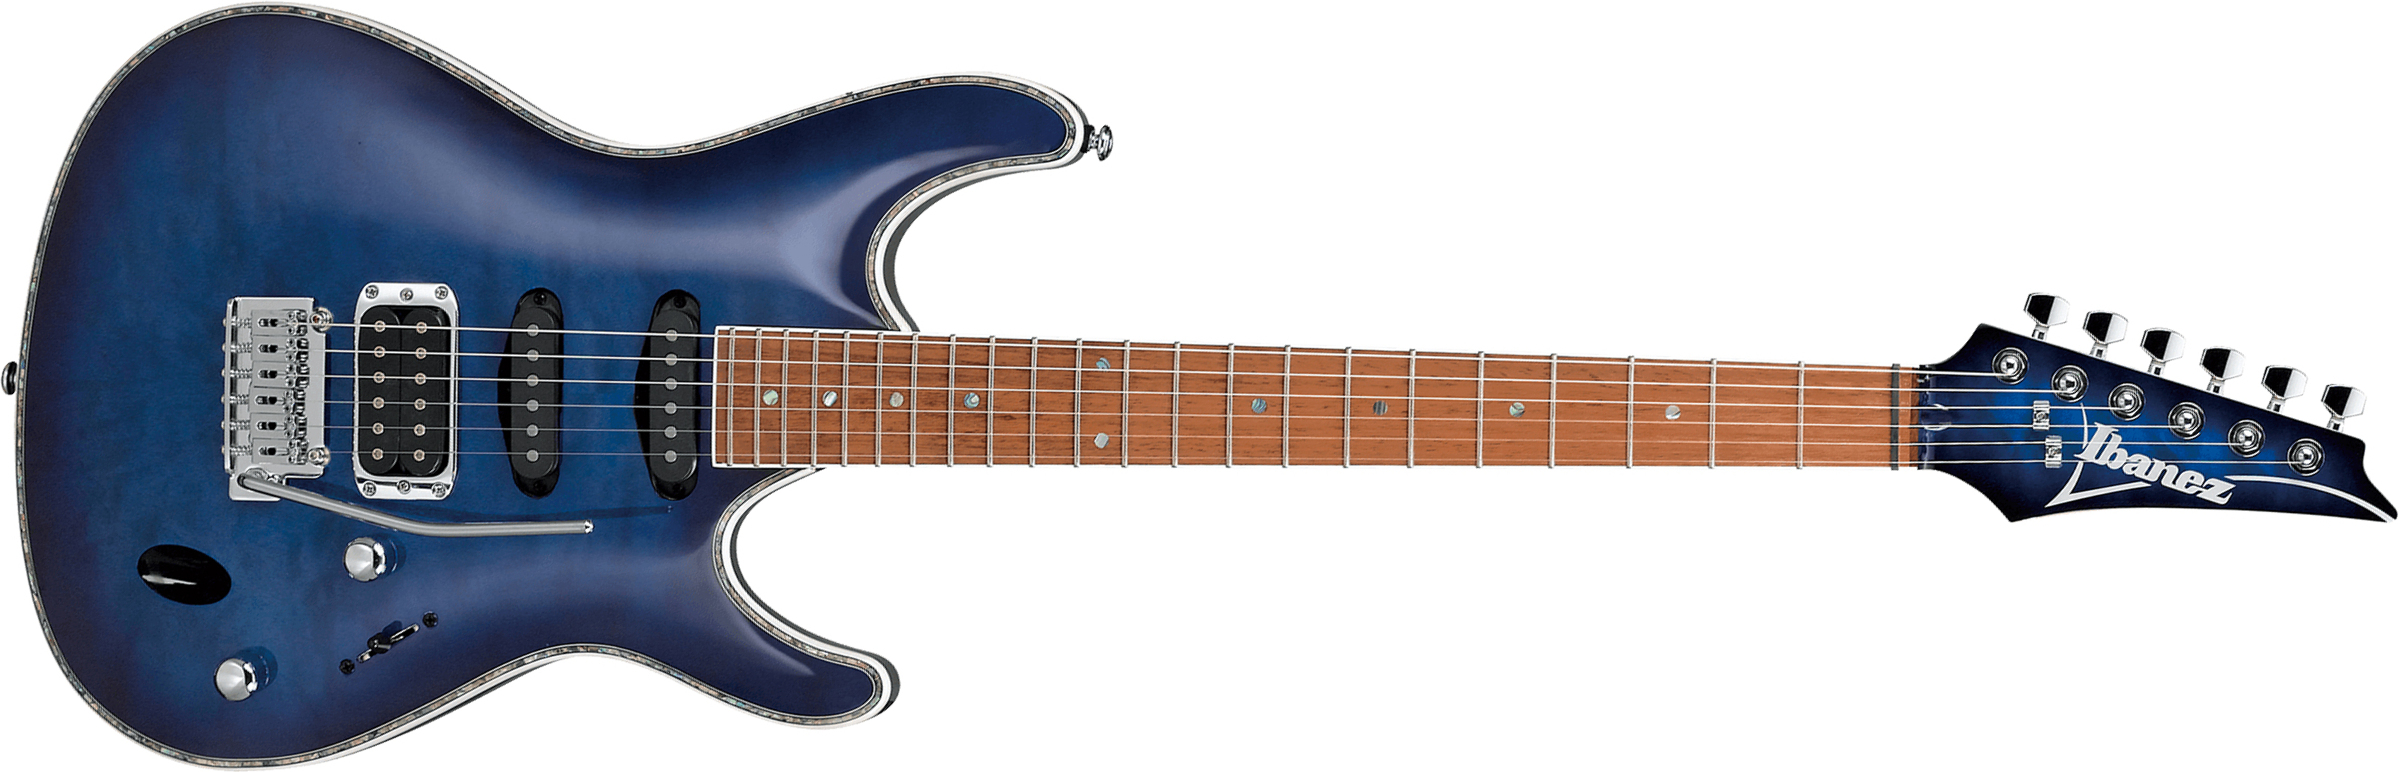 Ibanez Sa360nqm Spb Standard Hss Trem Jat - Sapphire Blue - Guitarra eléctrica con forma de str. - Main picture